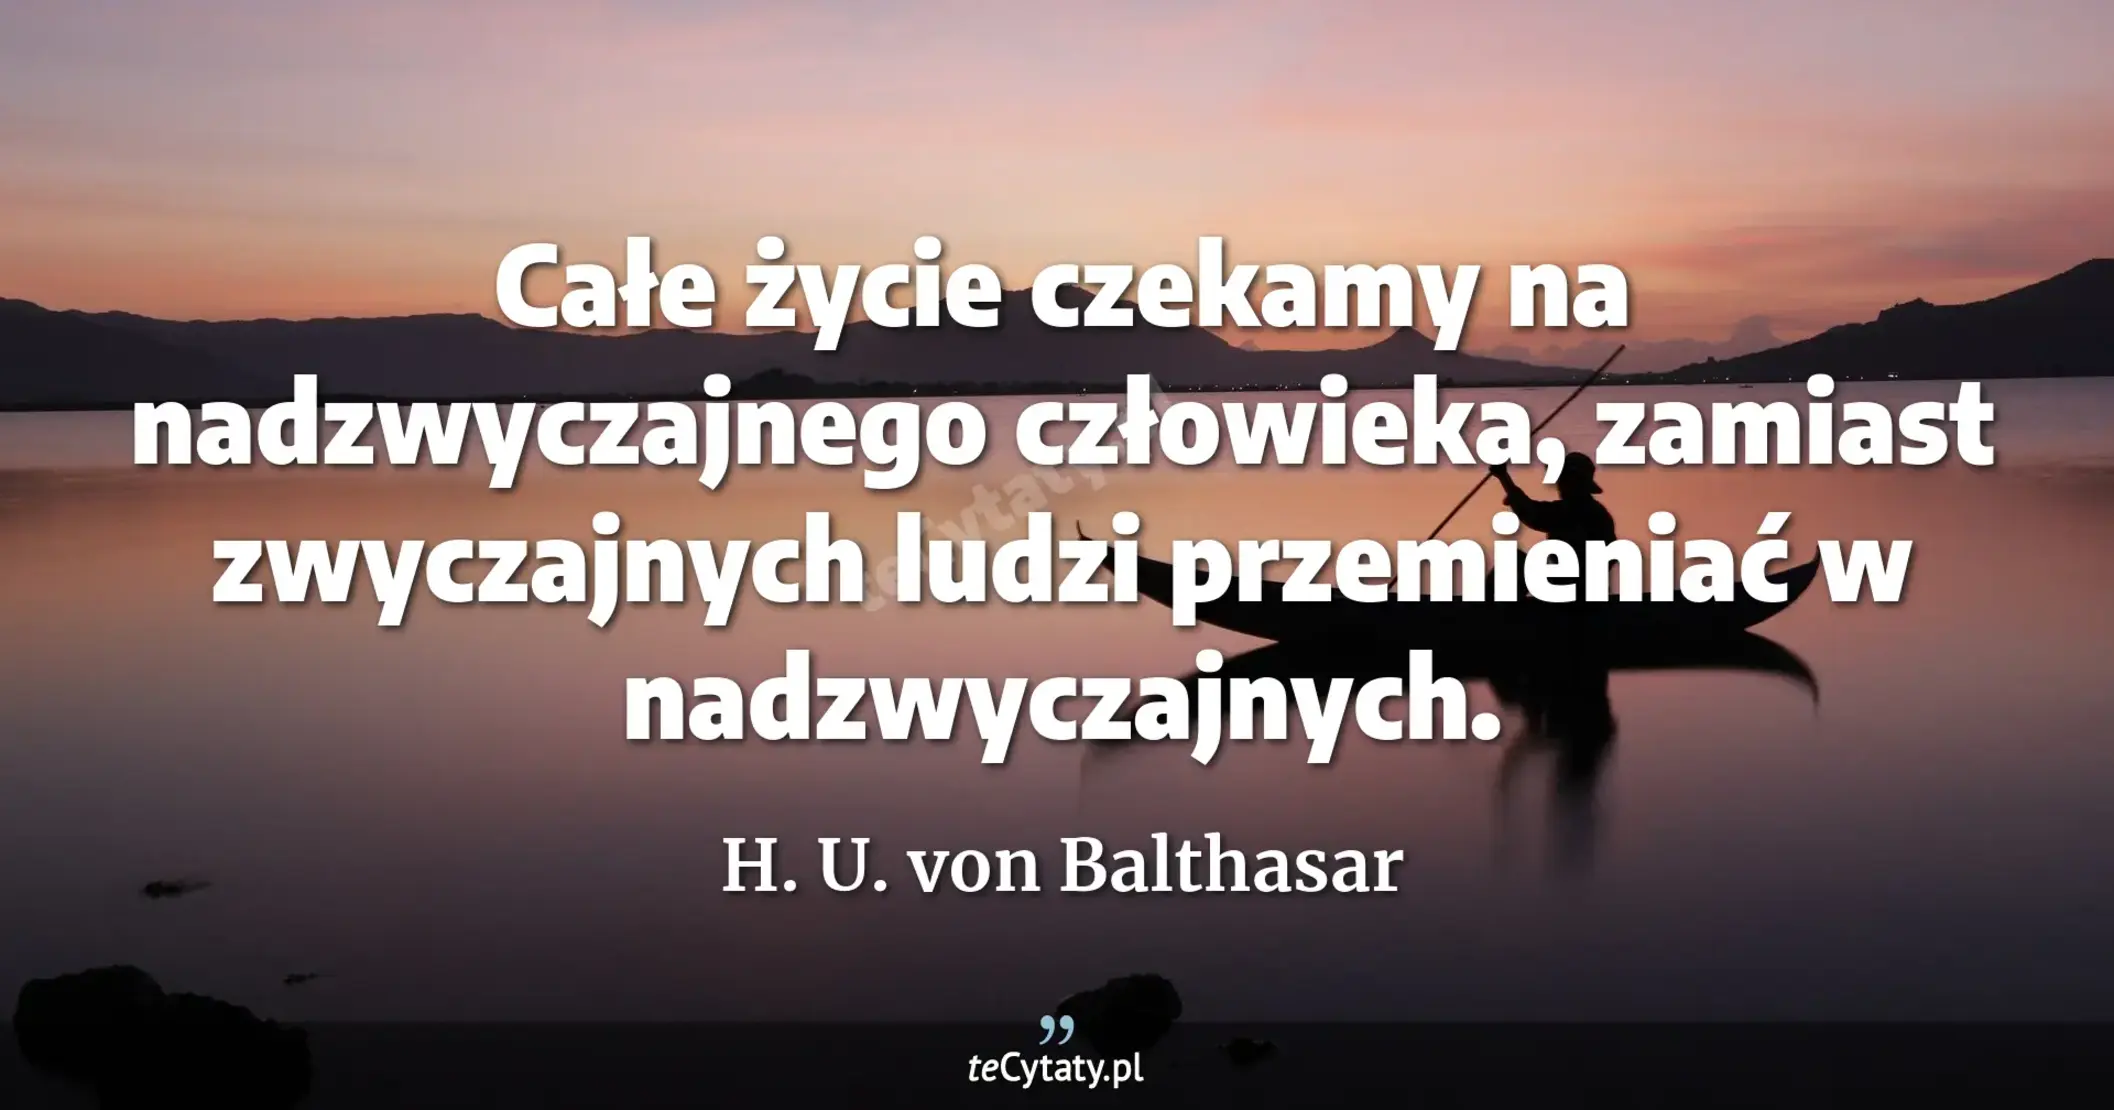 Całe życie czekamy na nadzwyczajnego człowieka, zamiast zwyczajnych ludzi przemieniać w nadzwyczajnych. - H. U. von Balthasar